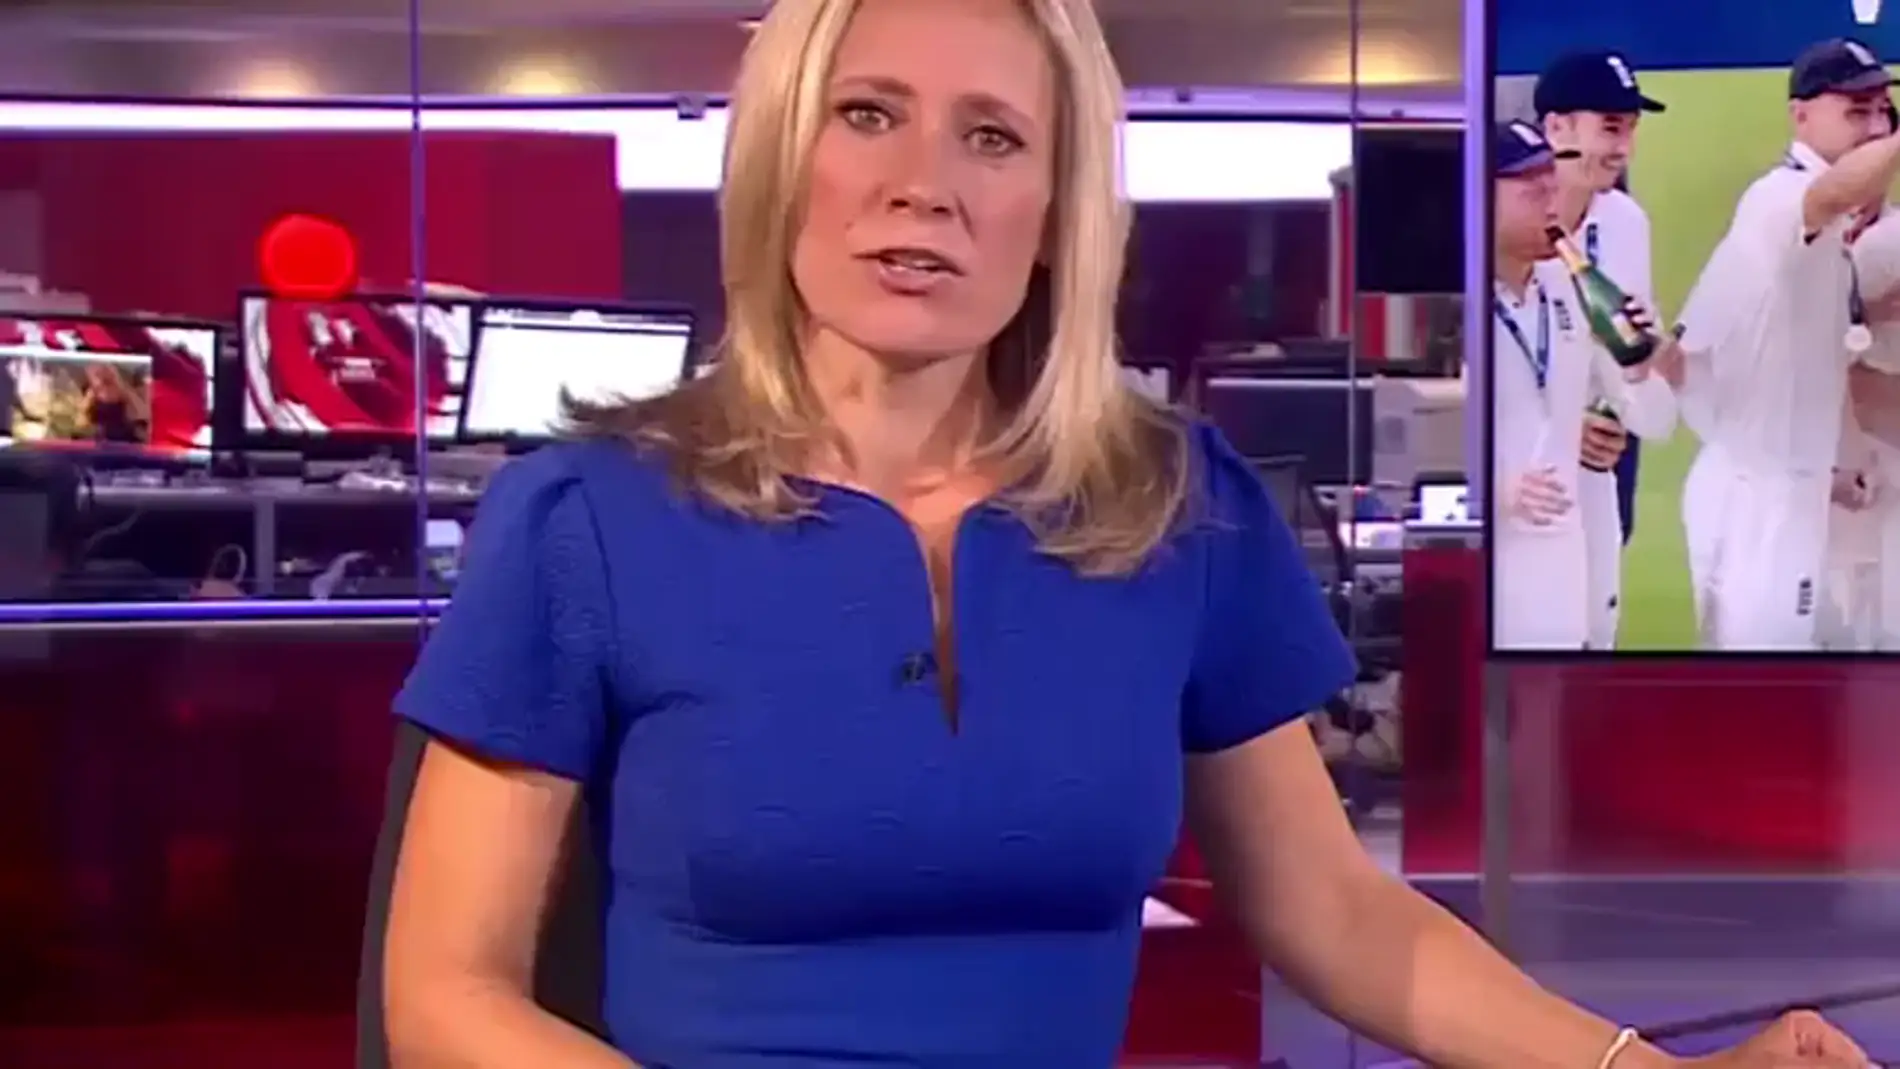 La cadena BBC emite porno durante un informativo